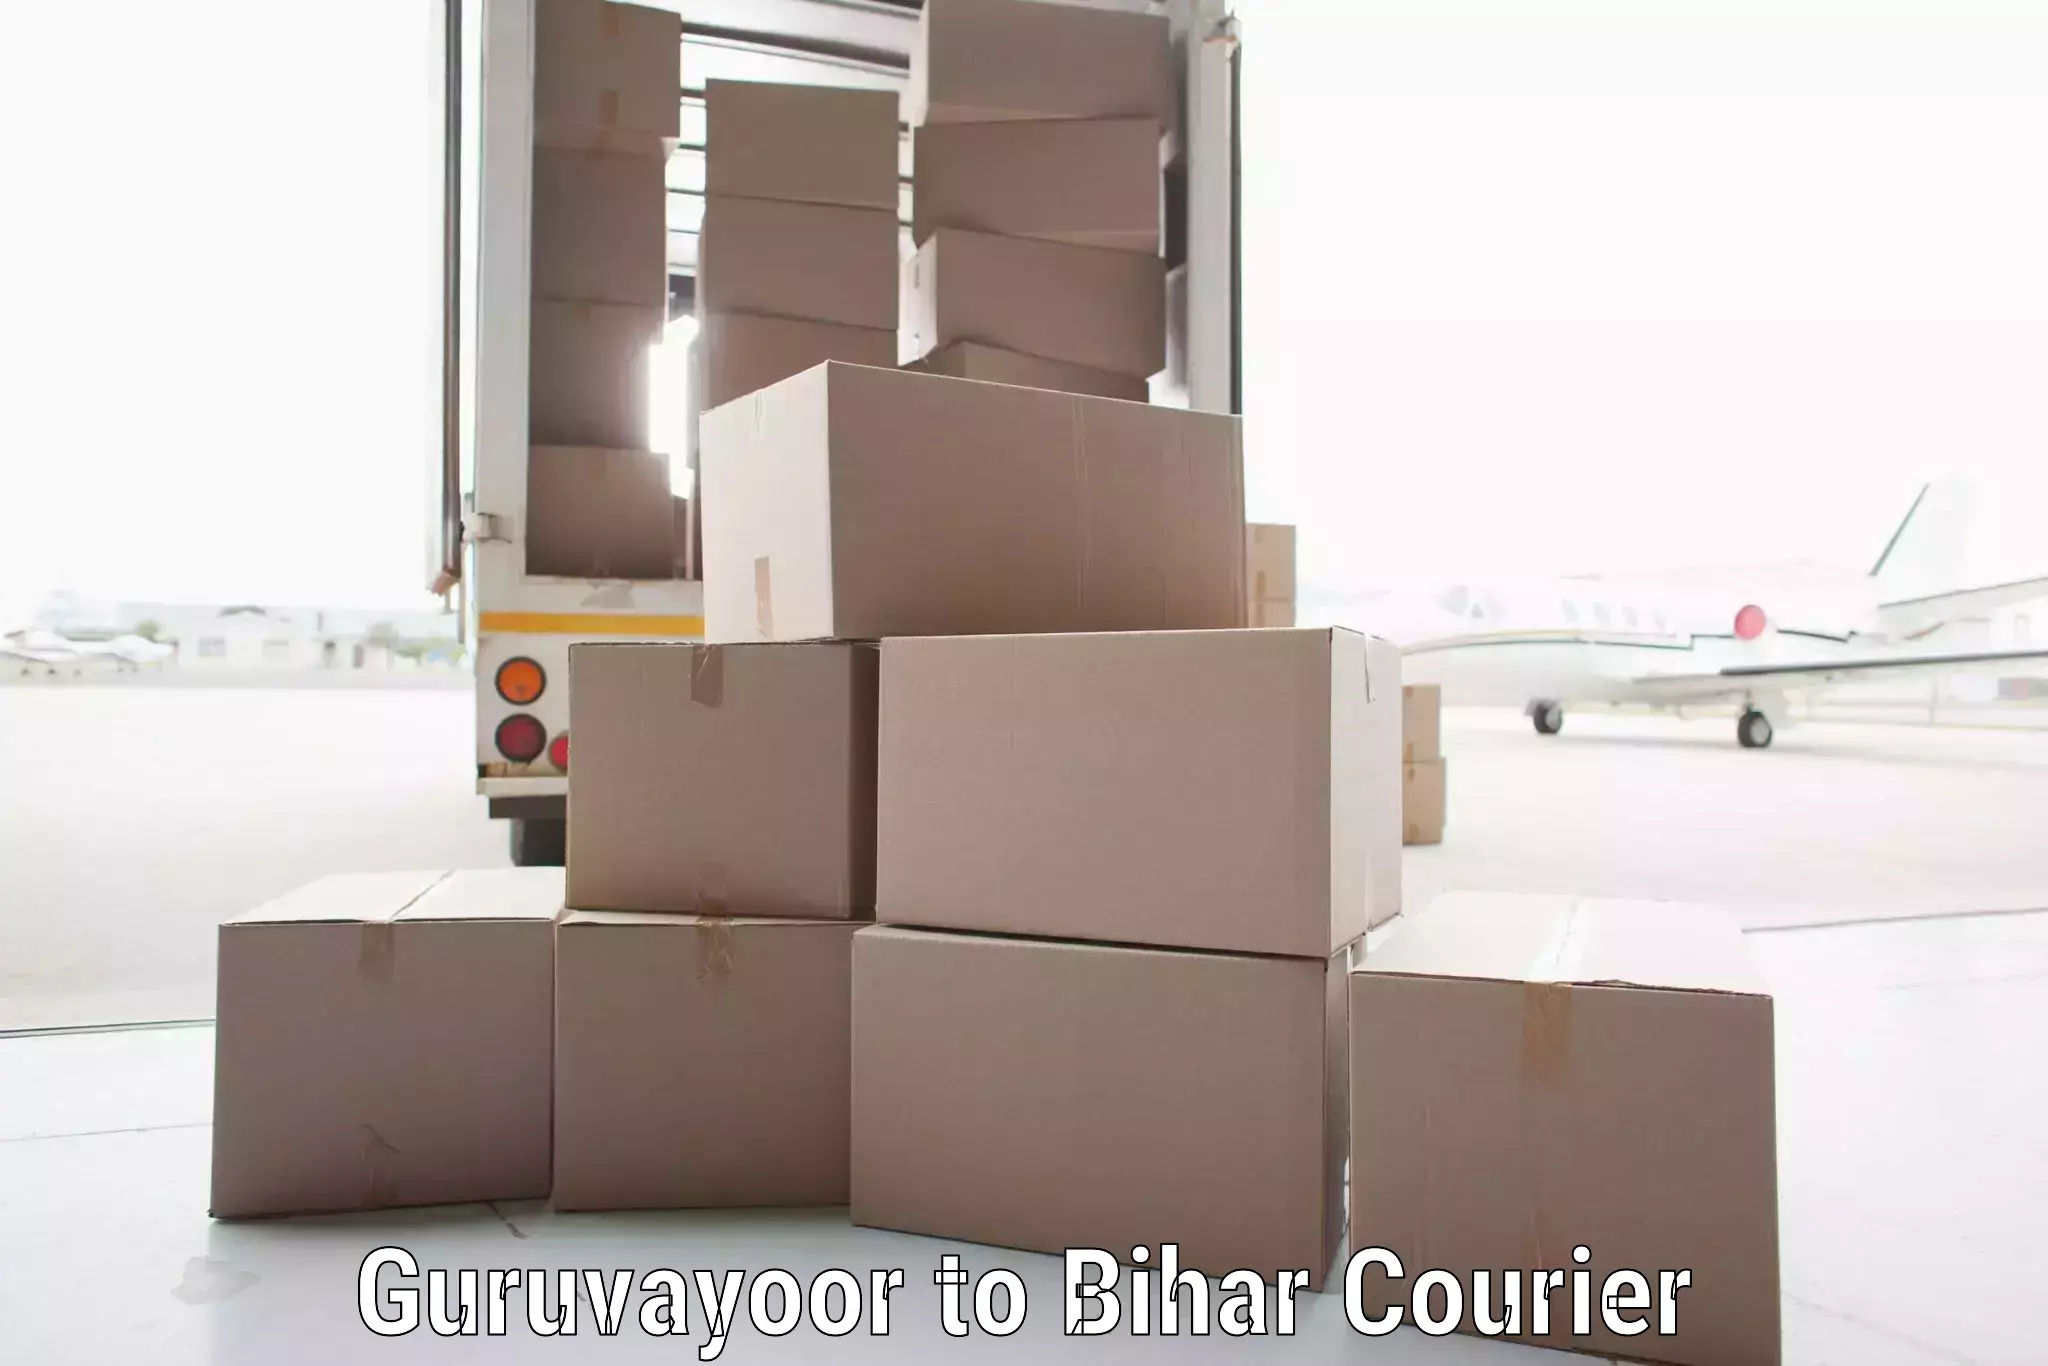 Customer-focused courier Guruvayoor to Sheikhpura